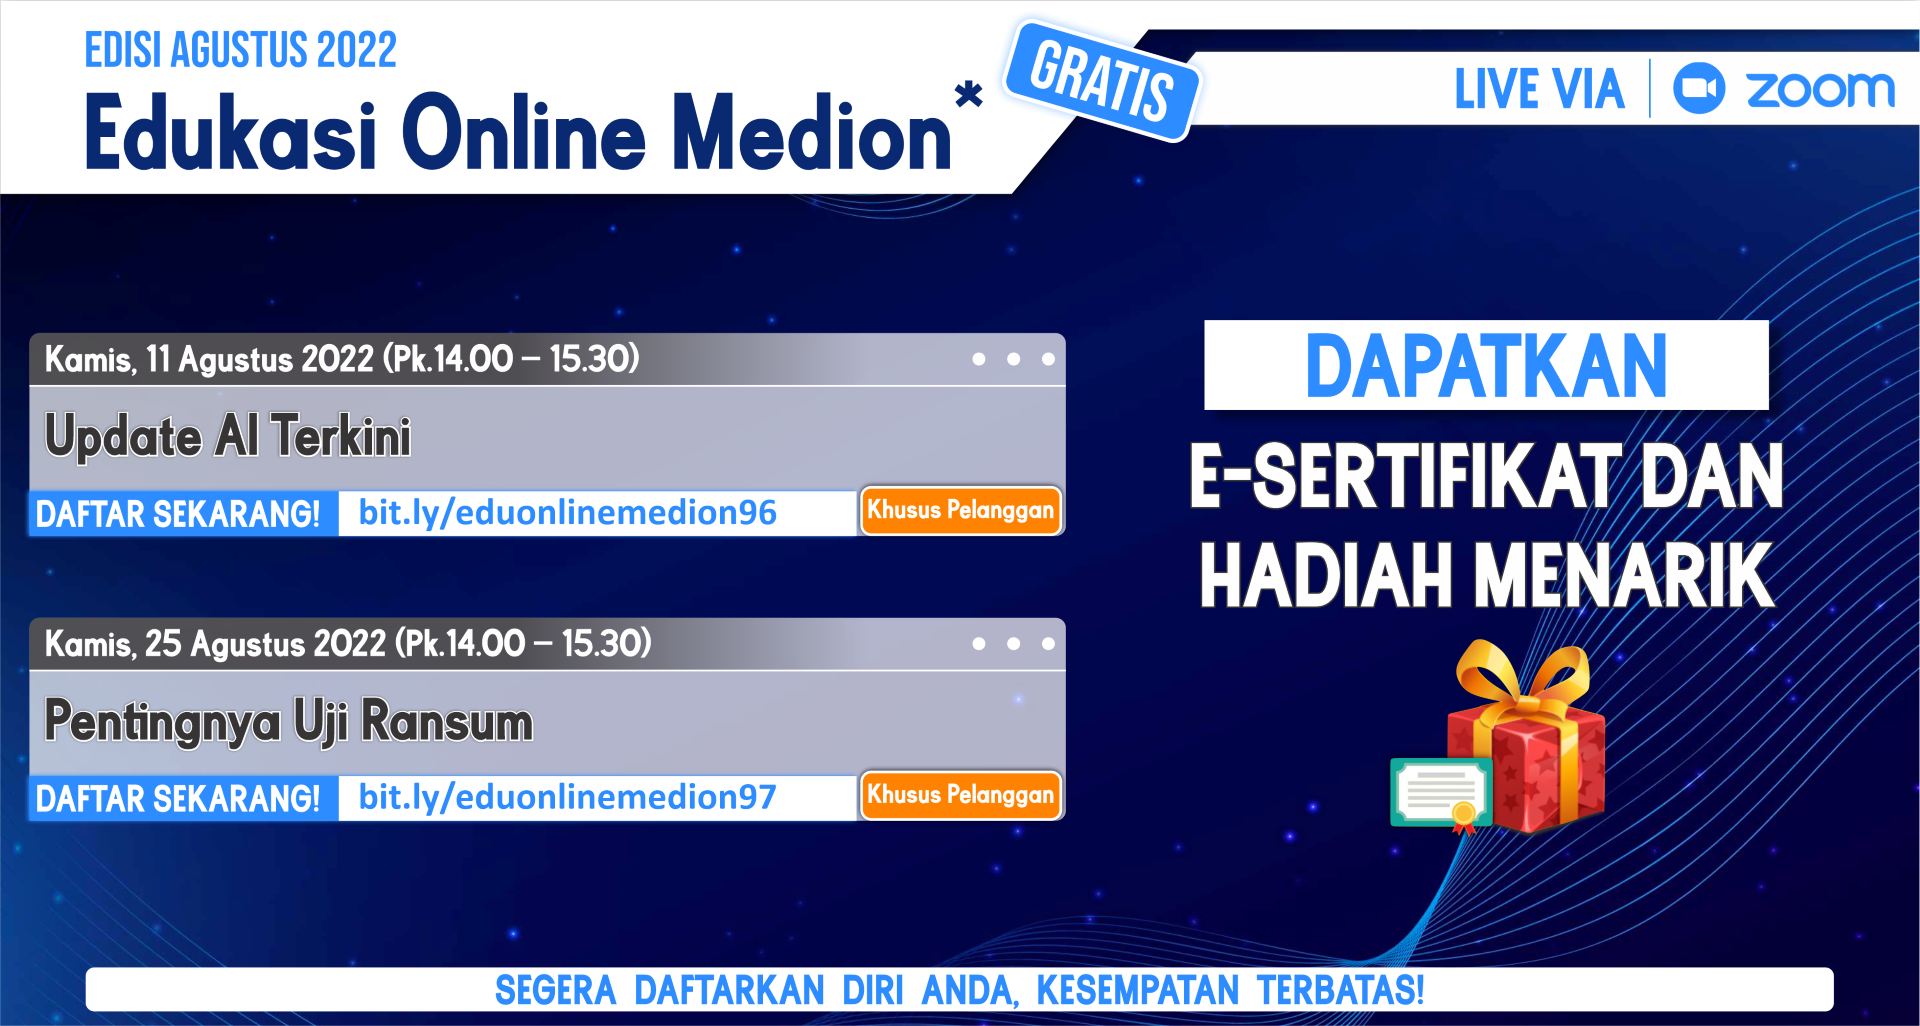 8. Web Banner Edu Online Medion - Agustus 2022 (Large)